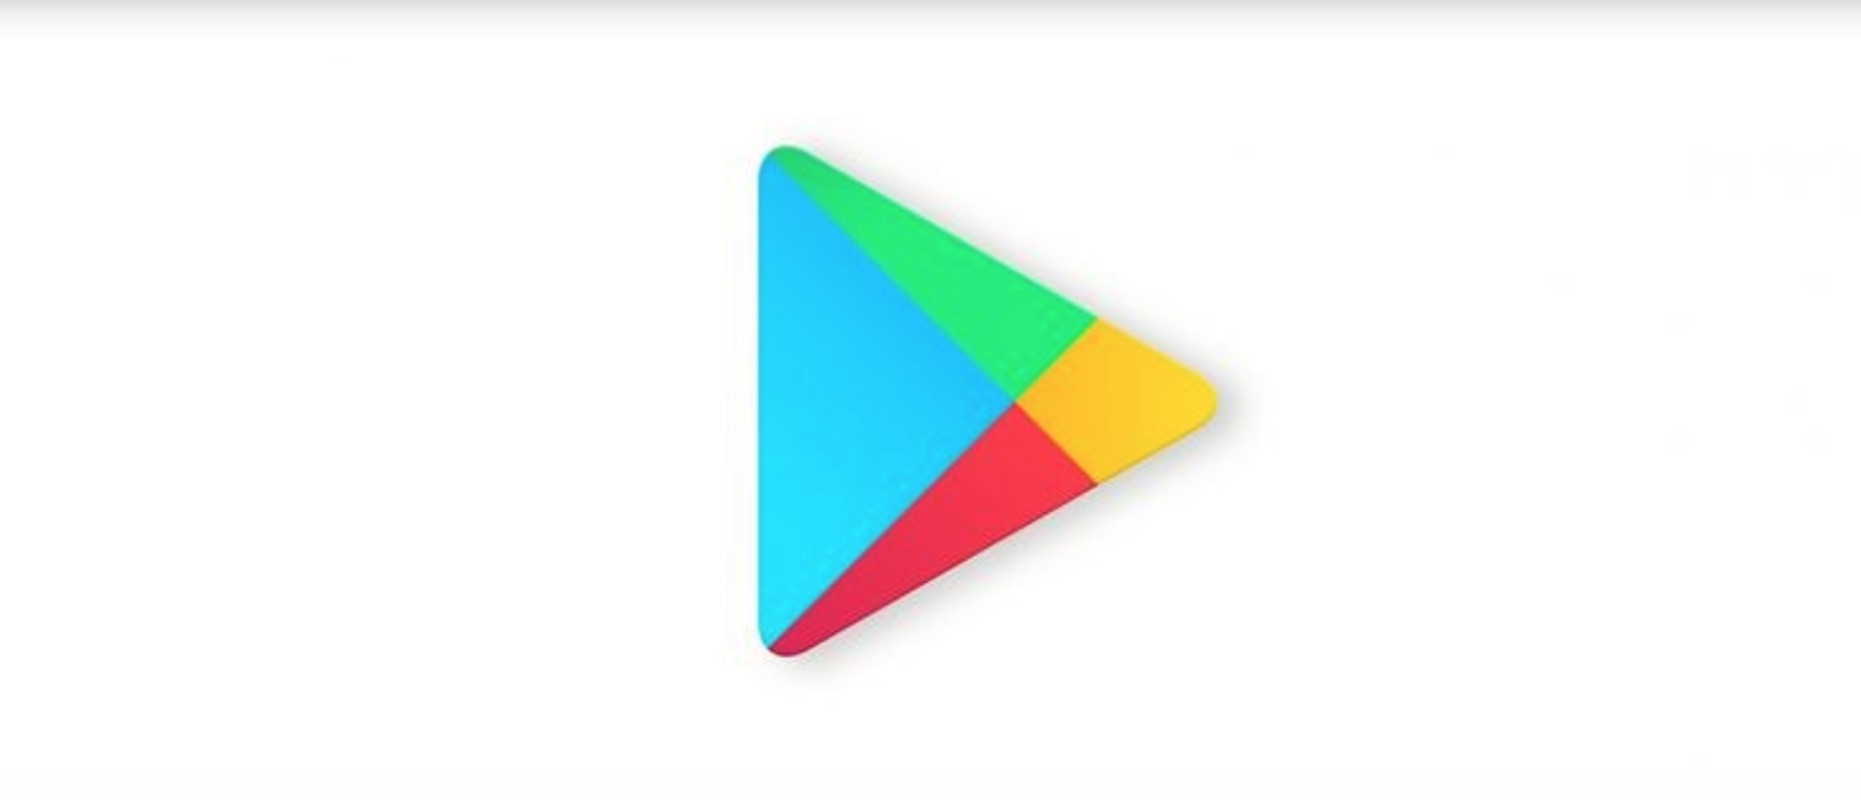 Google Play Store kan börja spela kampanjfilmer automatiskt i listan